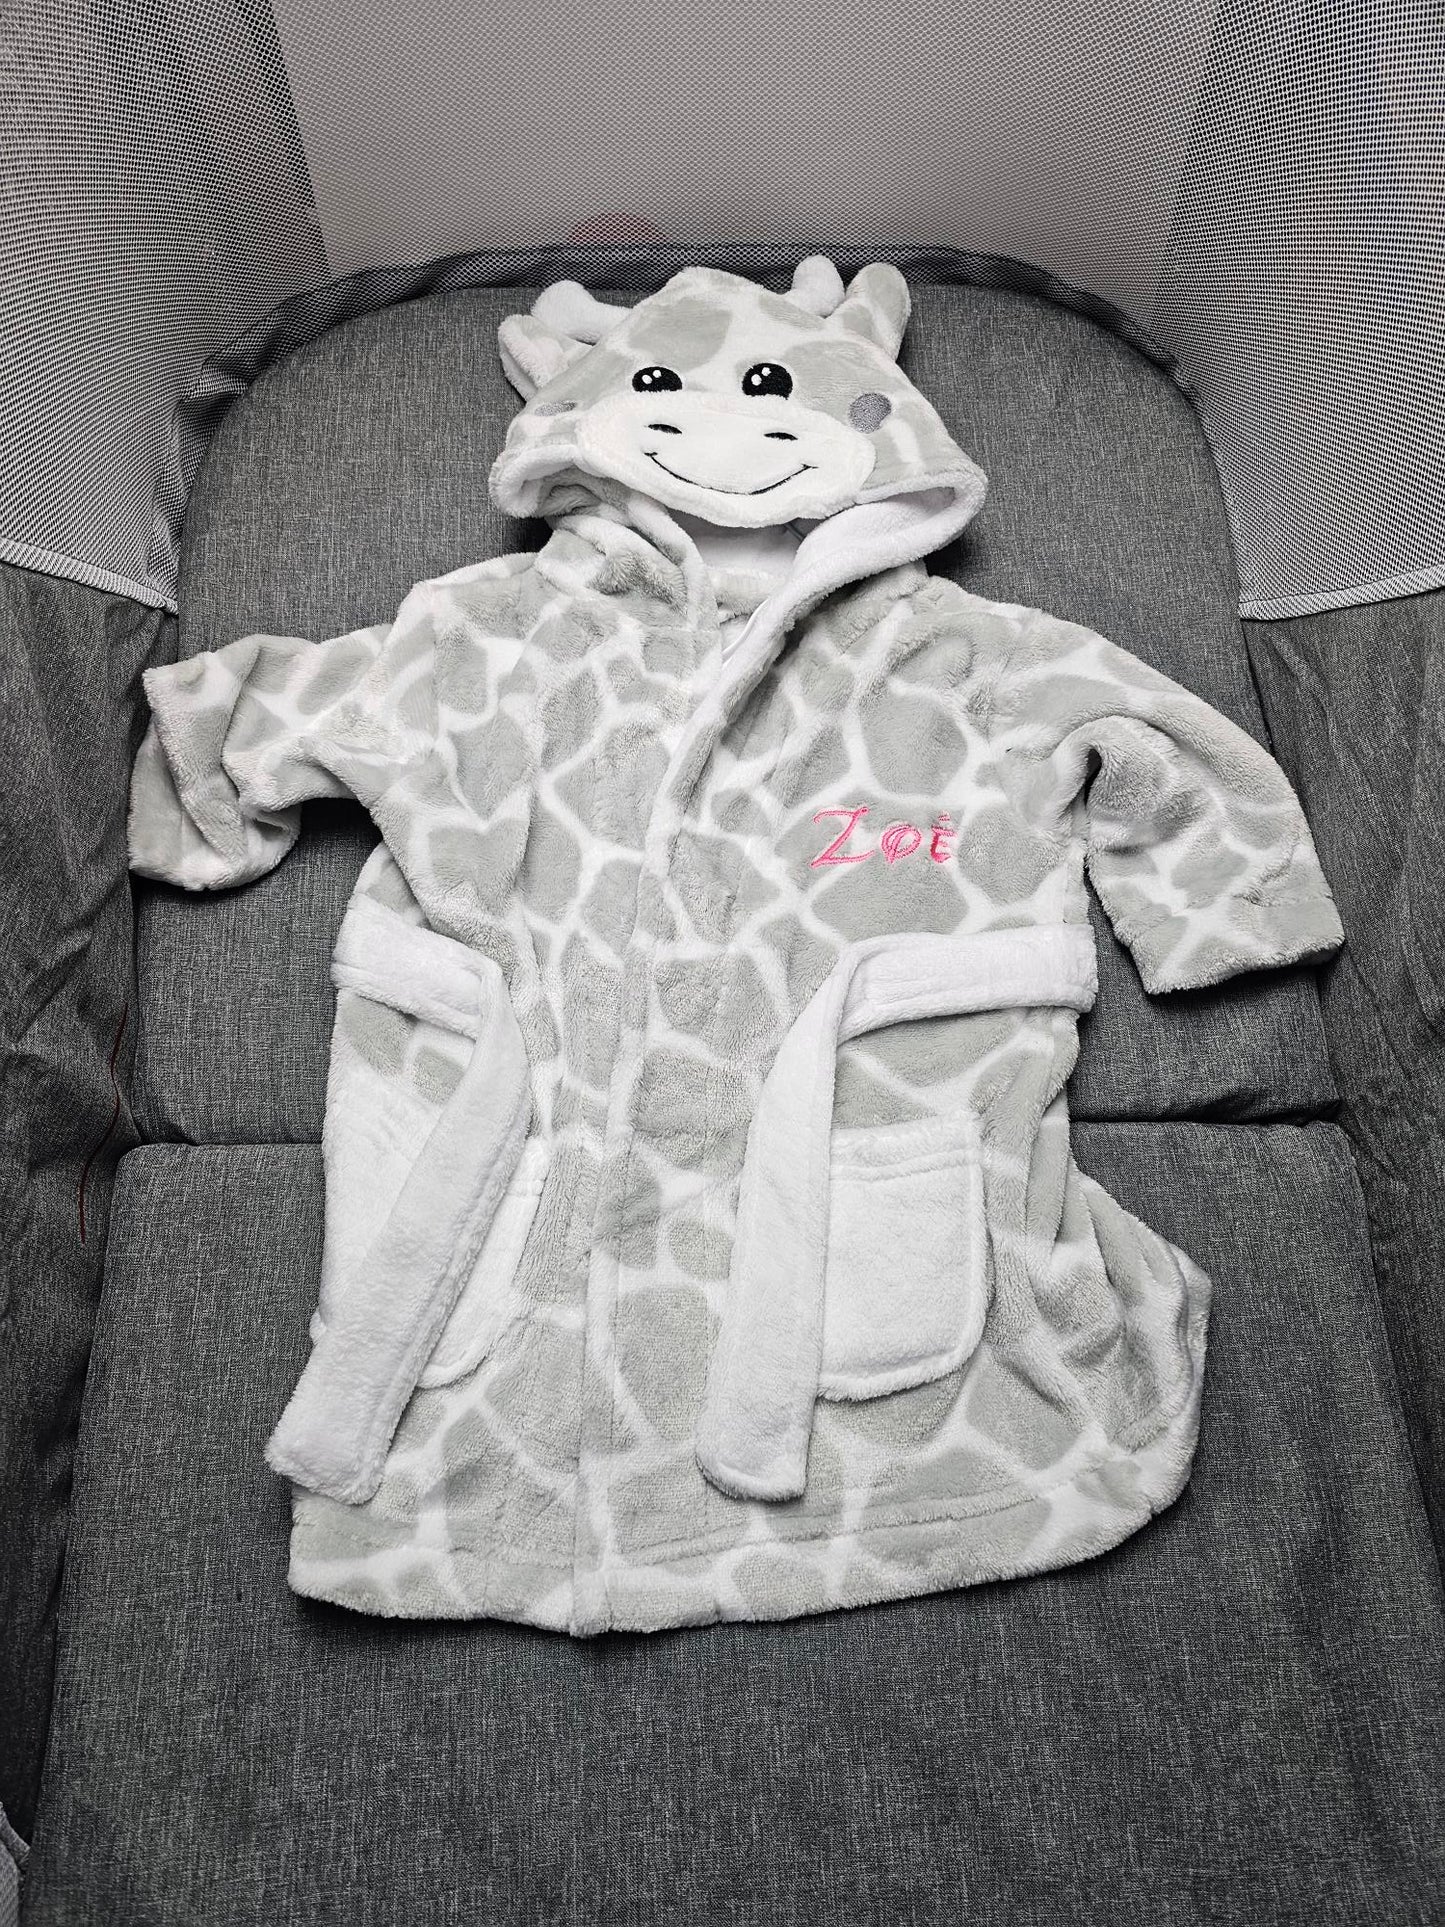 Peignoir bébé girafe personnalisé avec prénom - Calincaline.be